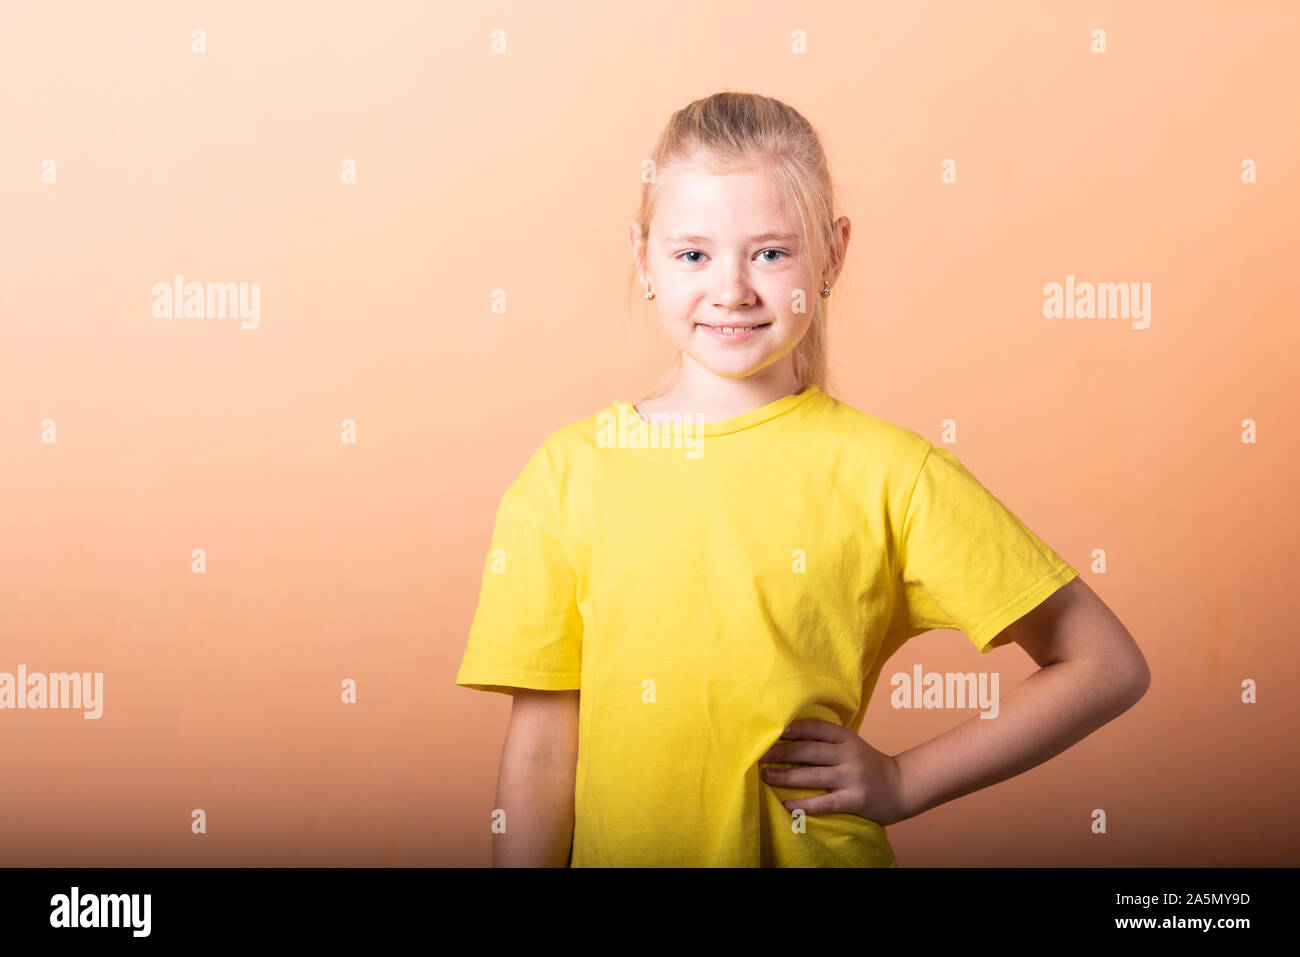 Das Mädchen legte ihre Hände auf ihren Hüften, auf einem hellen orange hinterlegt. Stockfoto